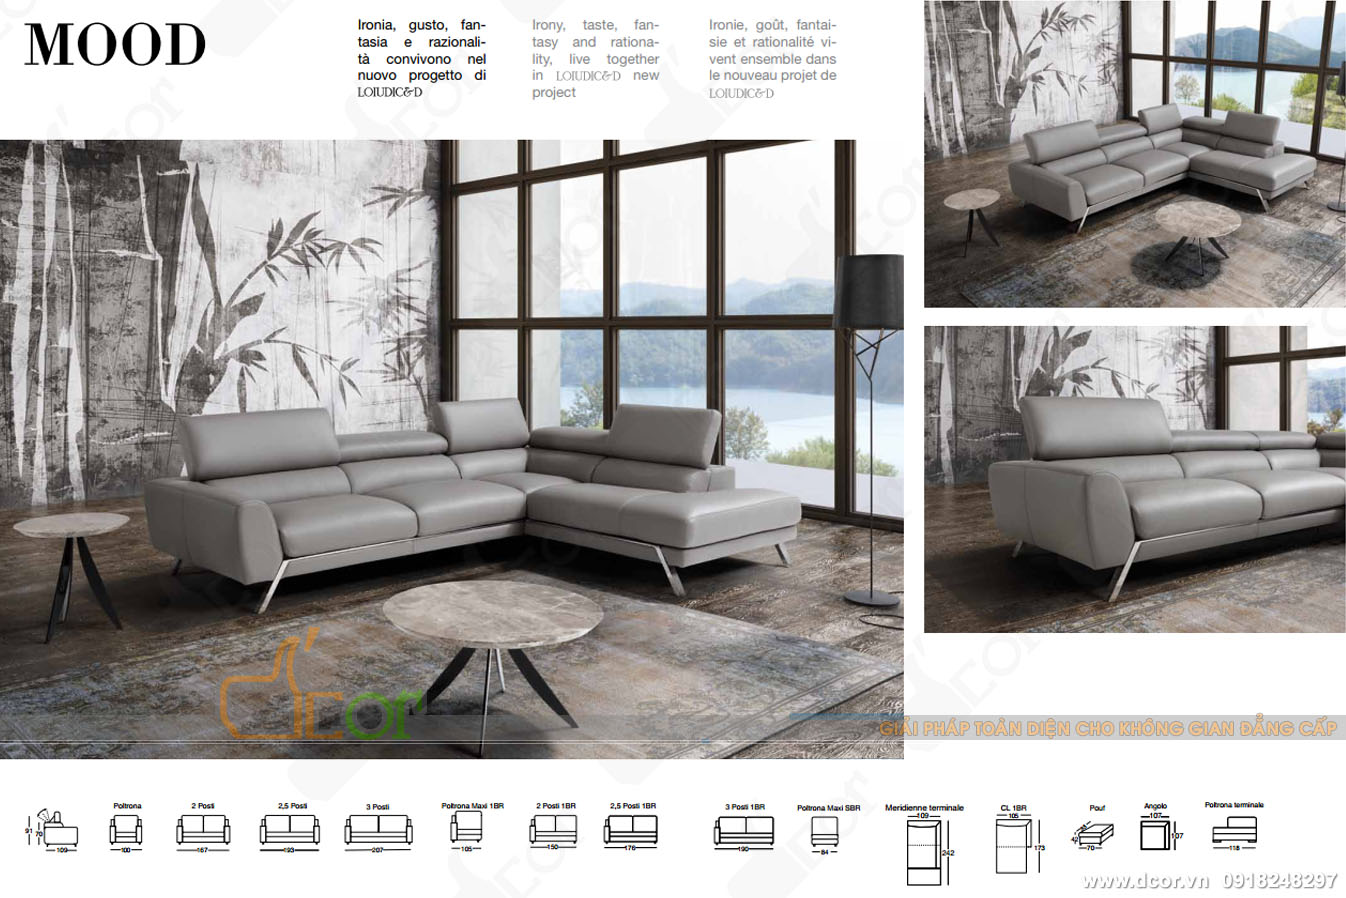 Đẳng cấp và cá tính trong thiết kế sofa Ý – Mã: DG1066 > 